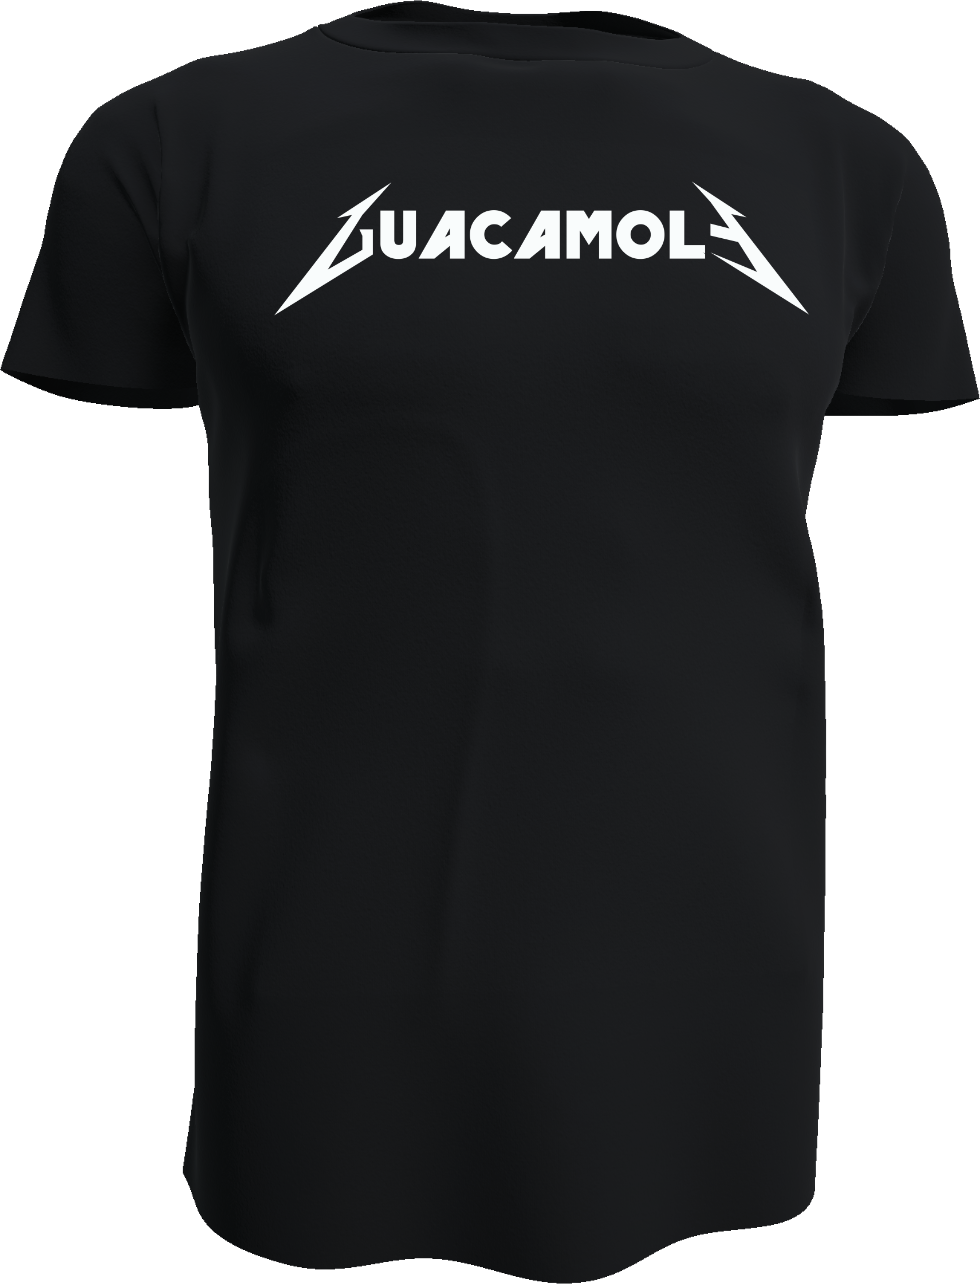 Das GuacamolE Shirt